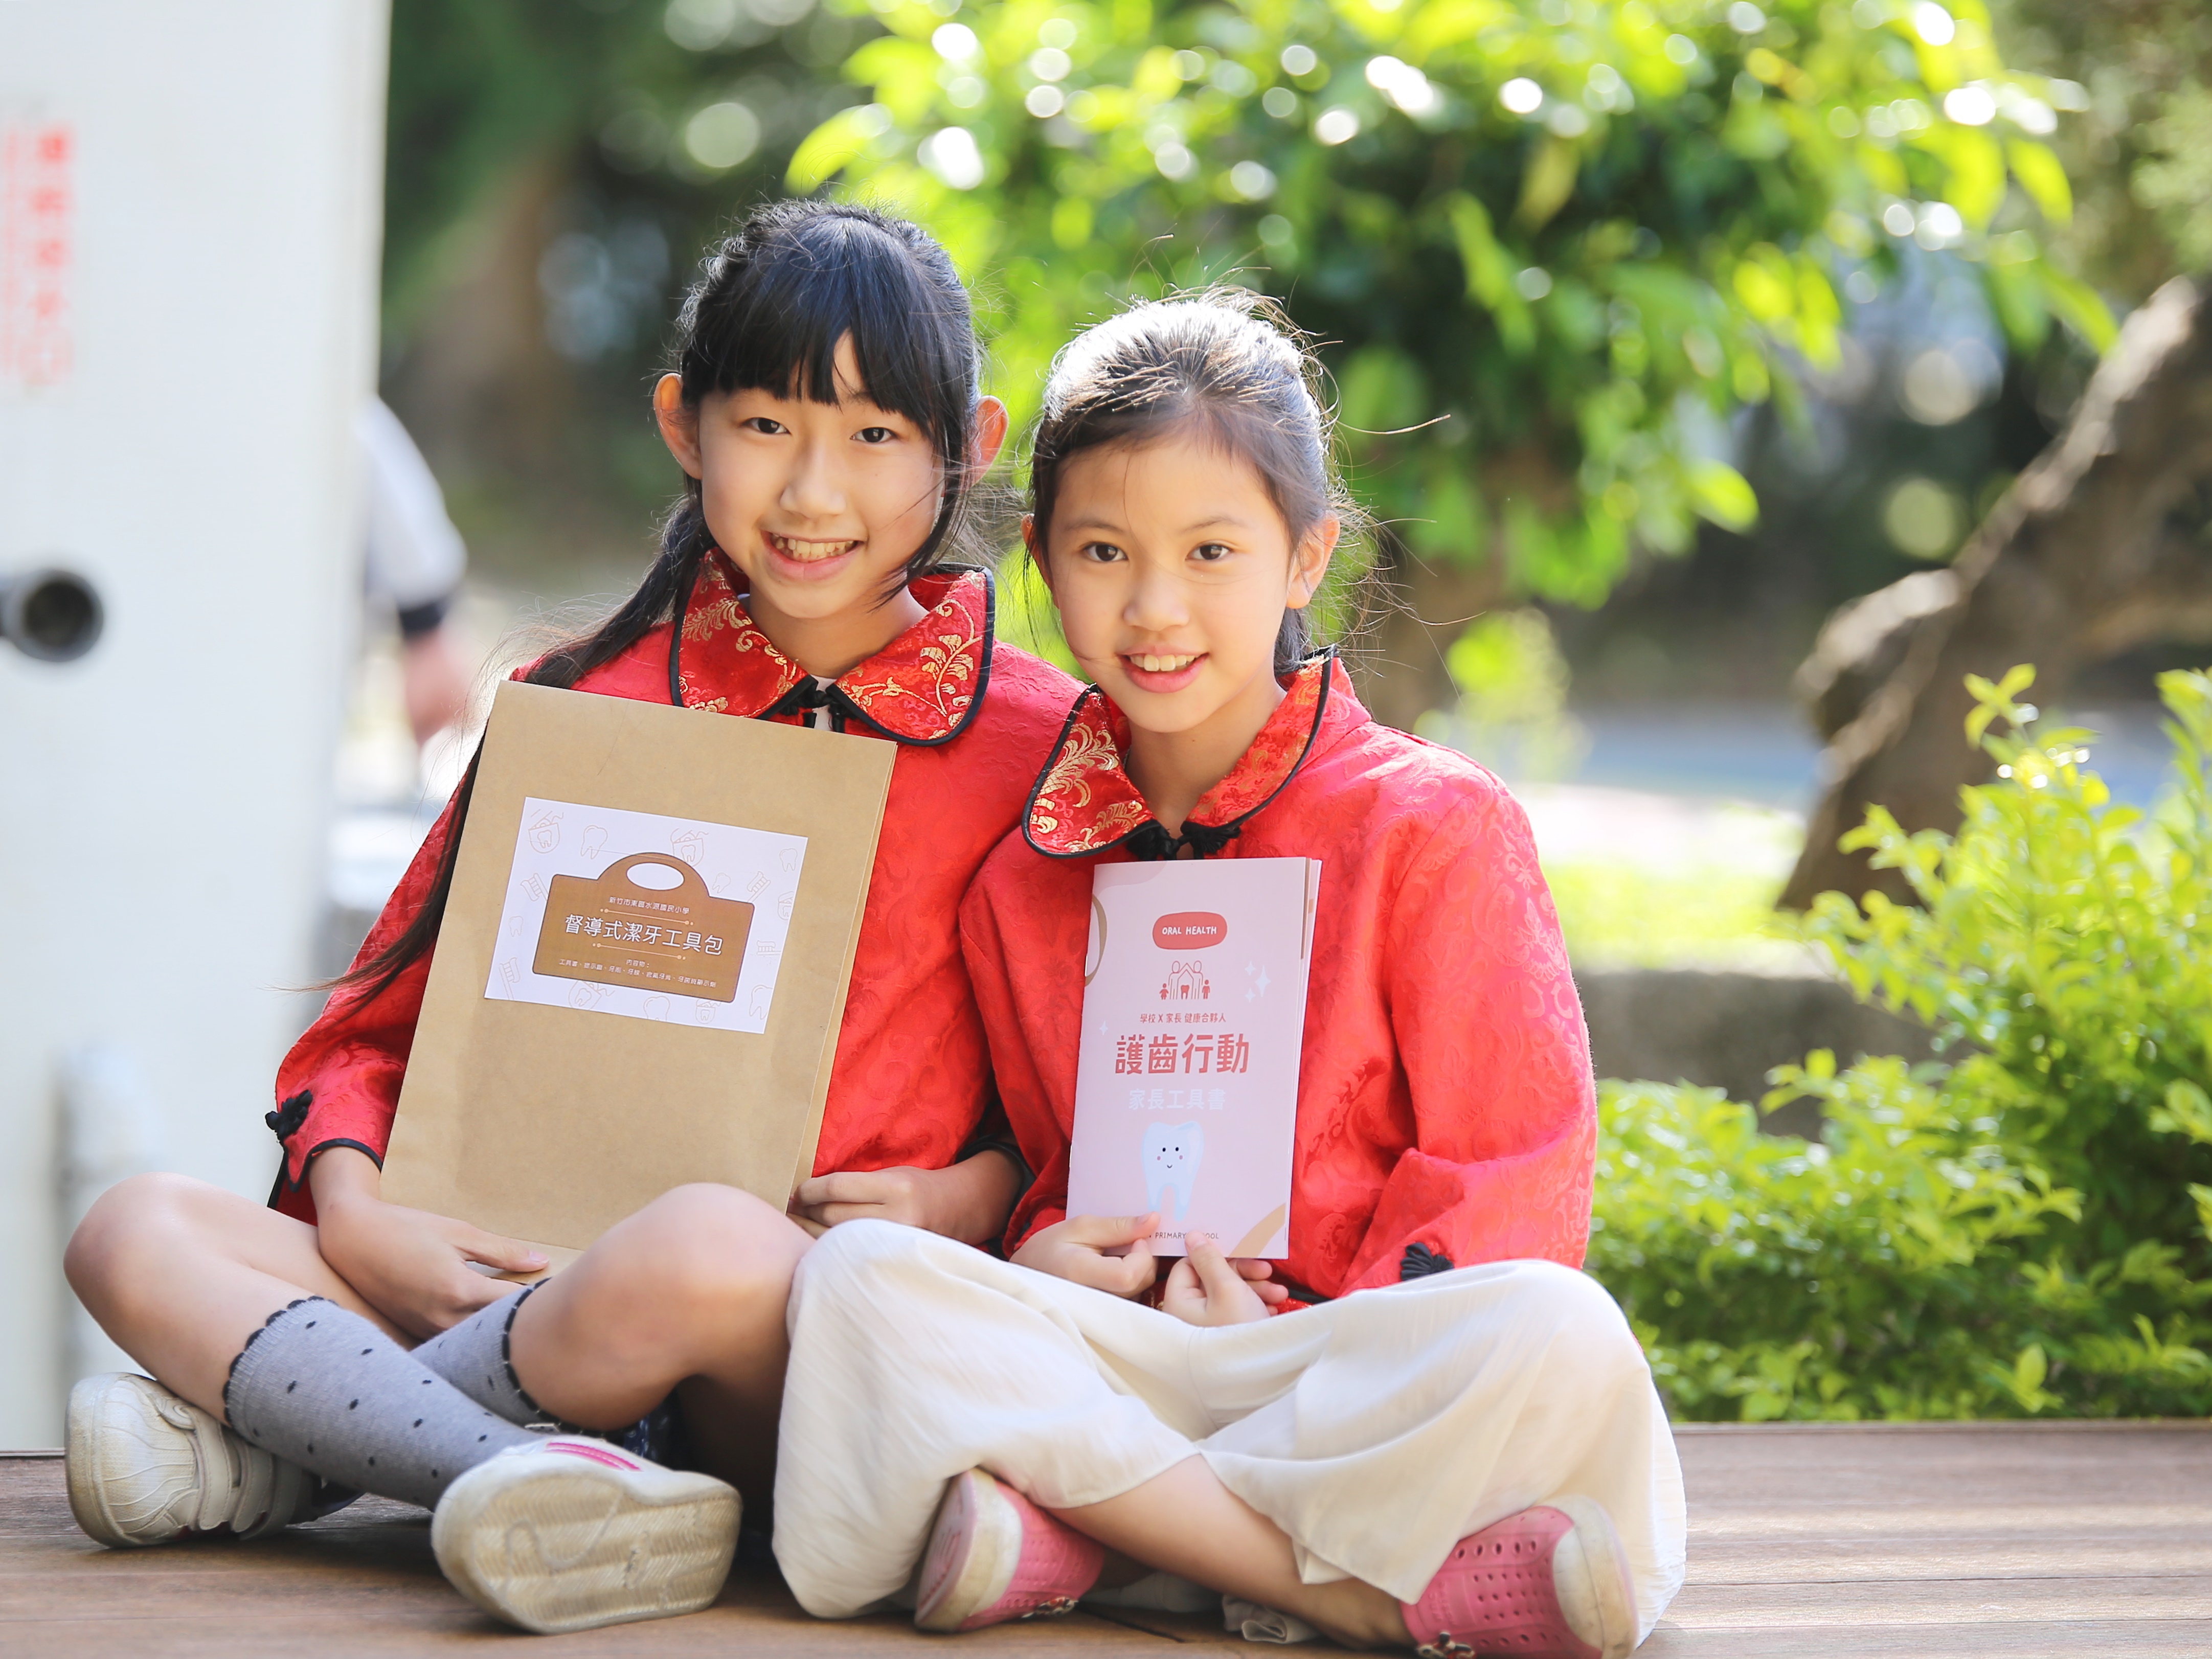 第一名新竹市水源國小設計家長督導式潔牙工具包幫助家長指導孩子潔牙(拍攝符合當時防疫規範)。